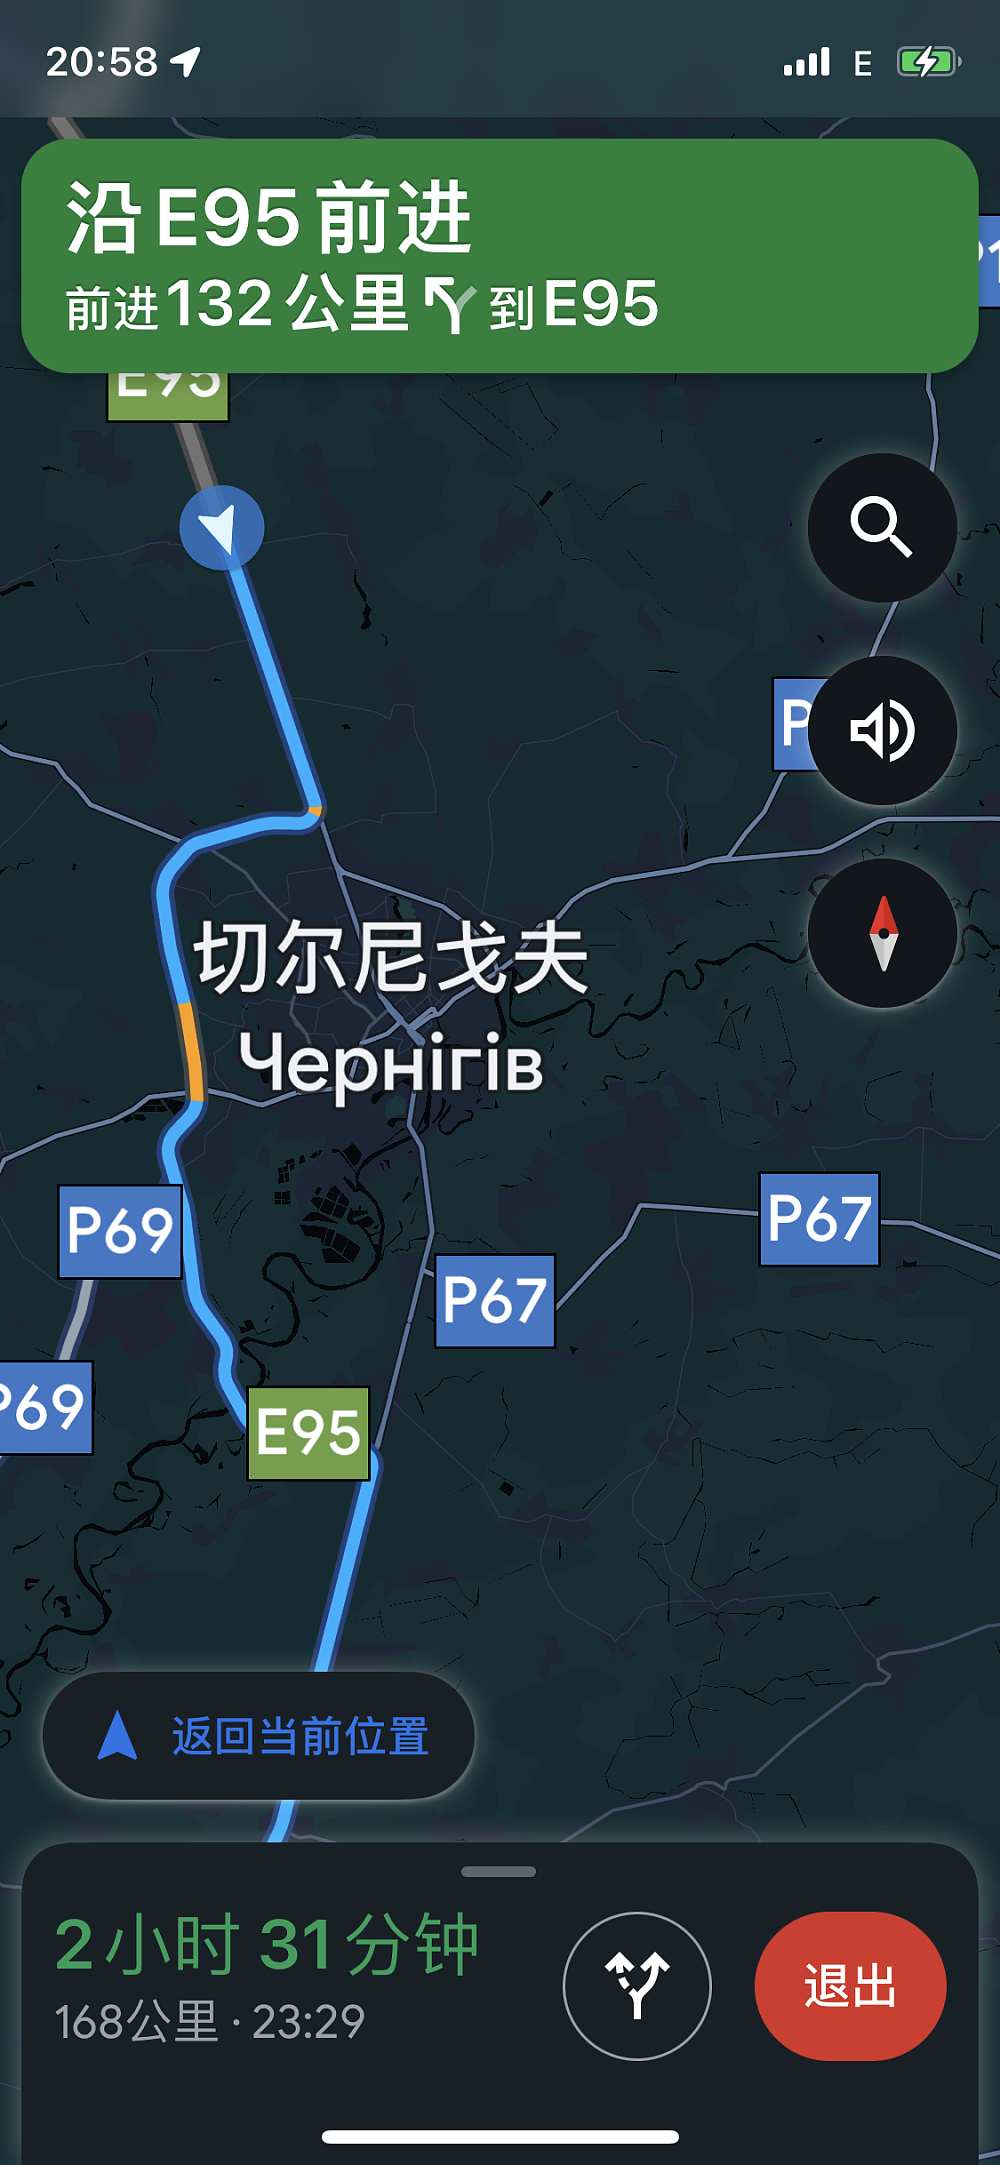 导航显示，切尔尼戈夫只能绕城通过。